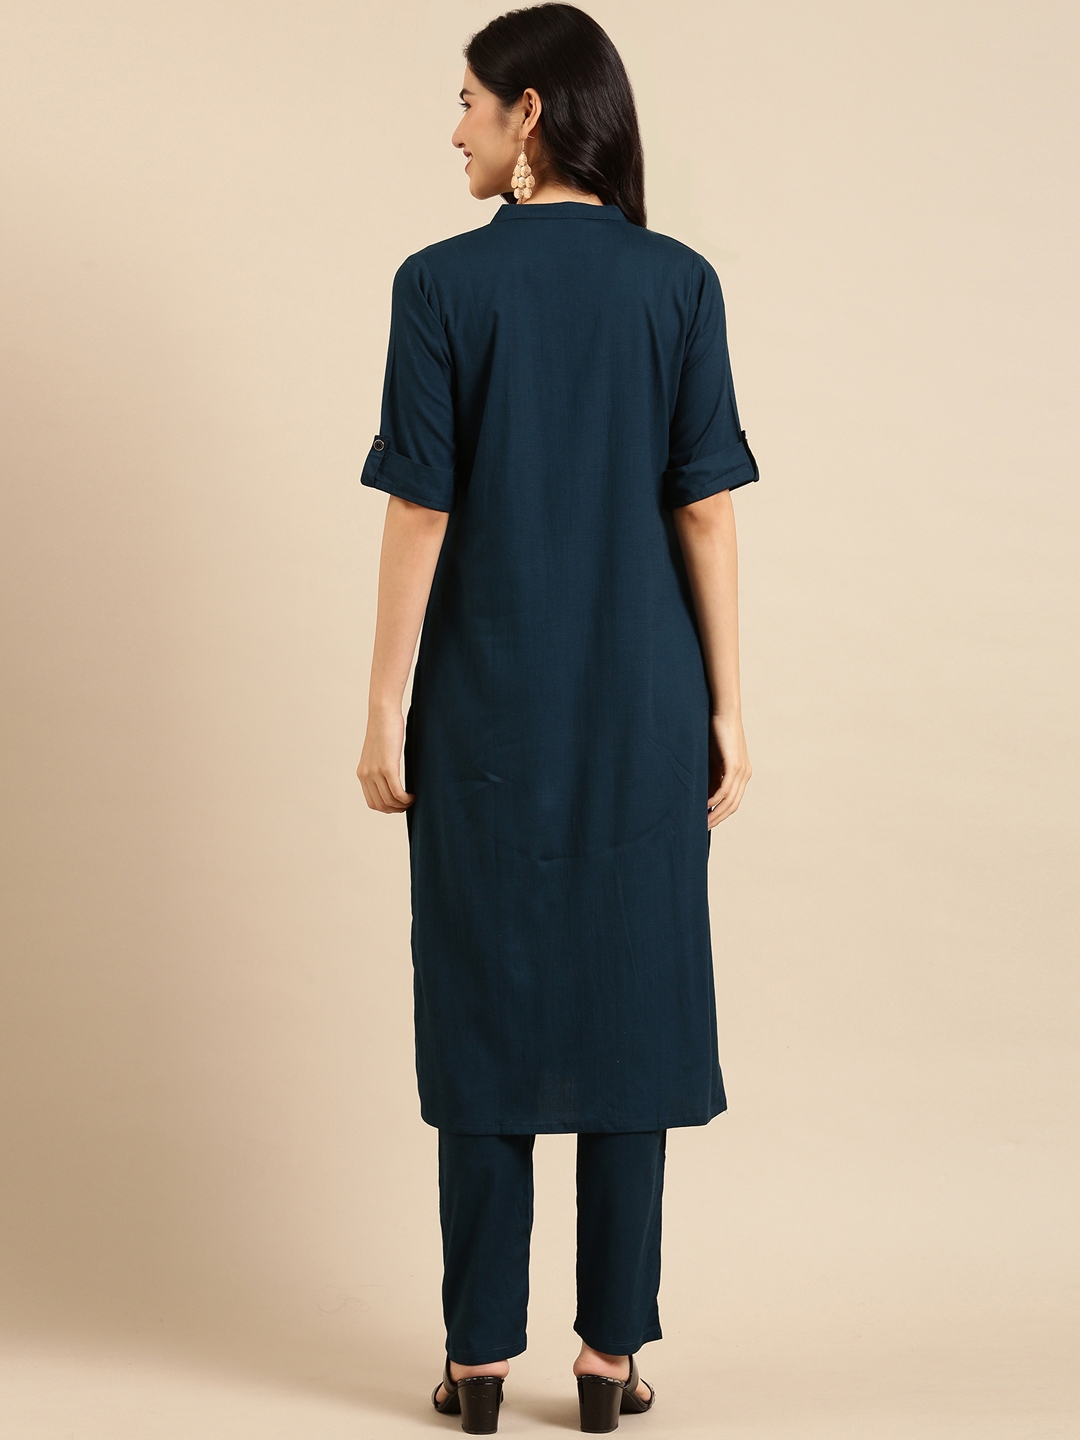 Women's Blue Cotton Blend Solid Comfort Fit Kurta Sets